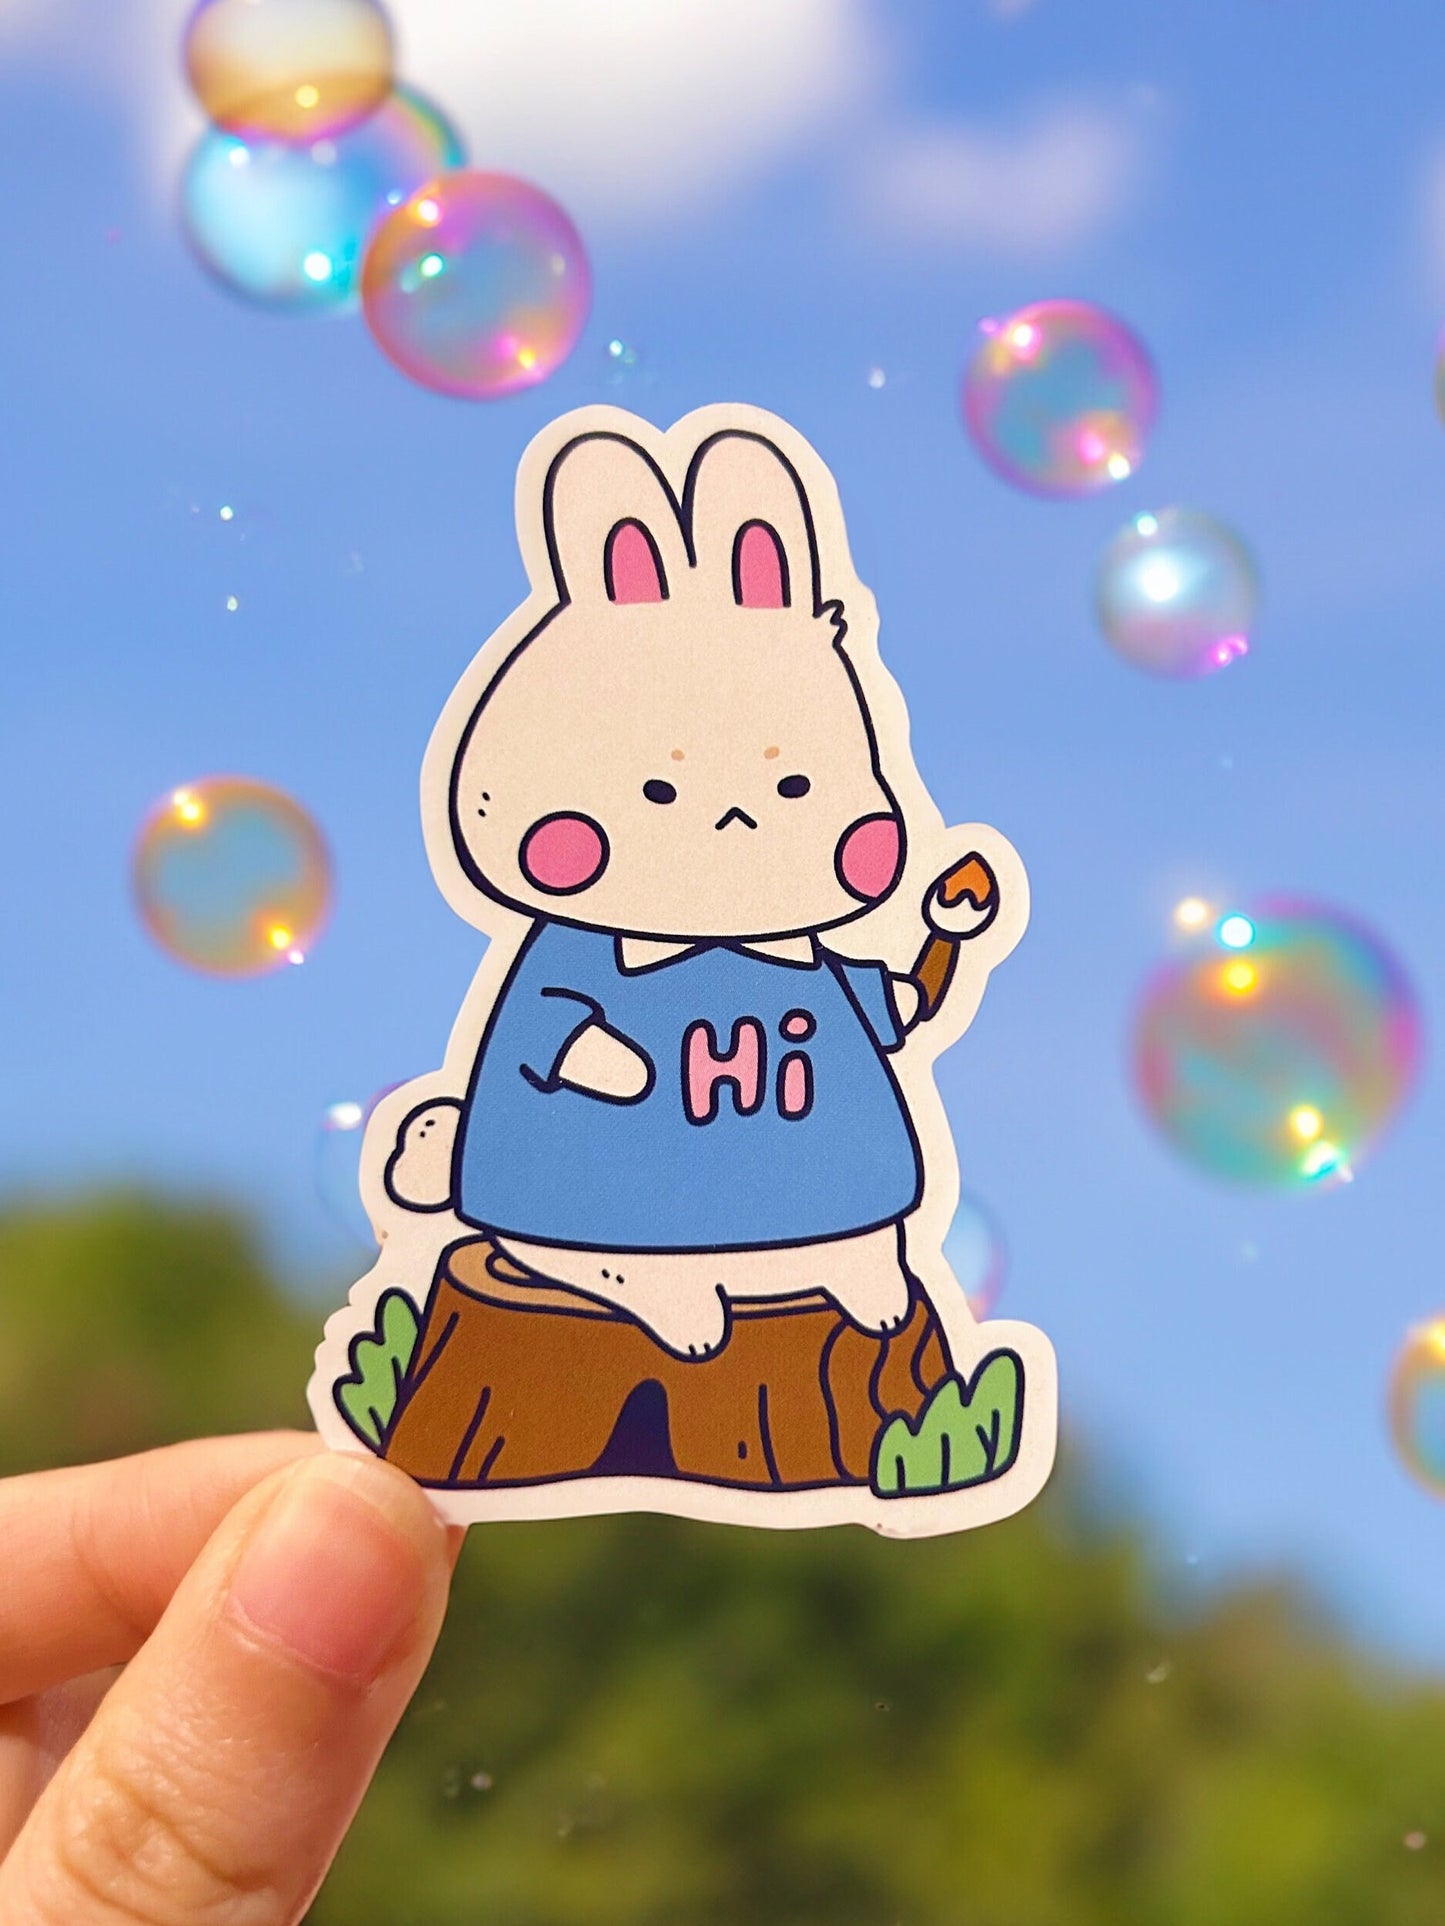 Artist bunny vinyl sticker | creator sticker | laptop waterbottle decal sticker